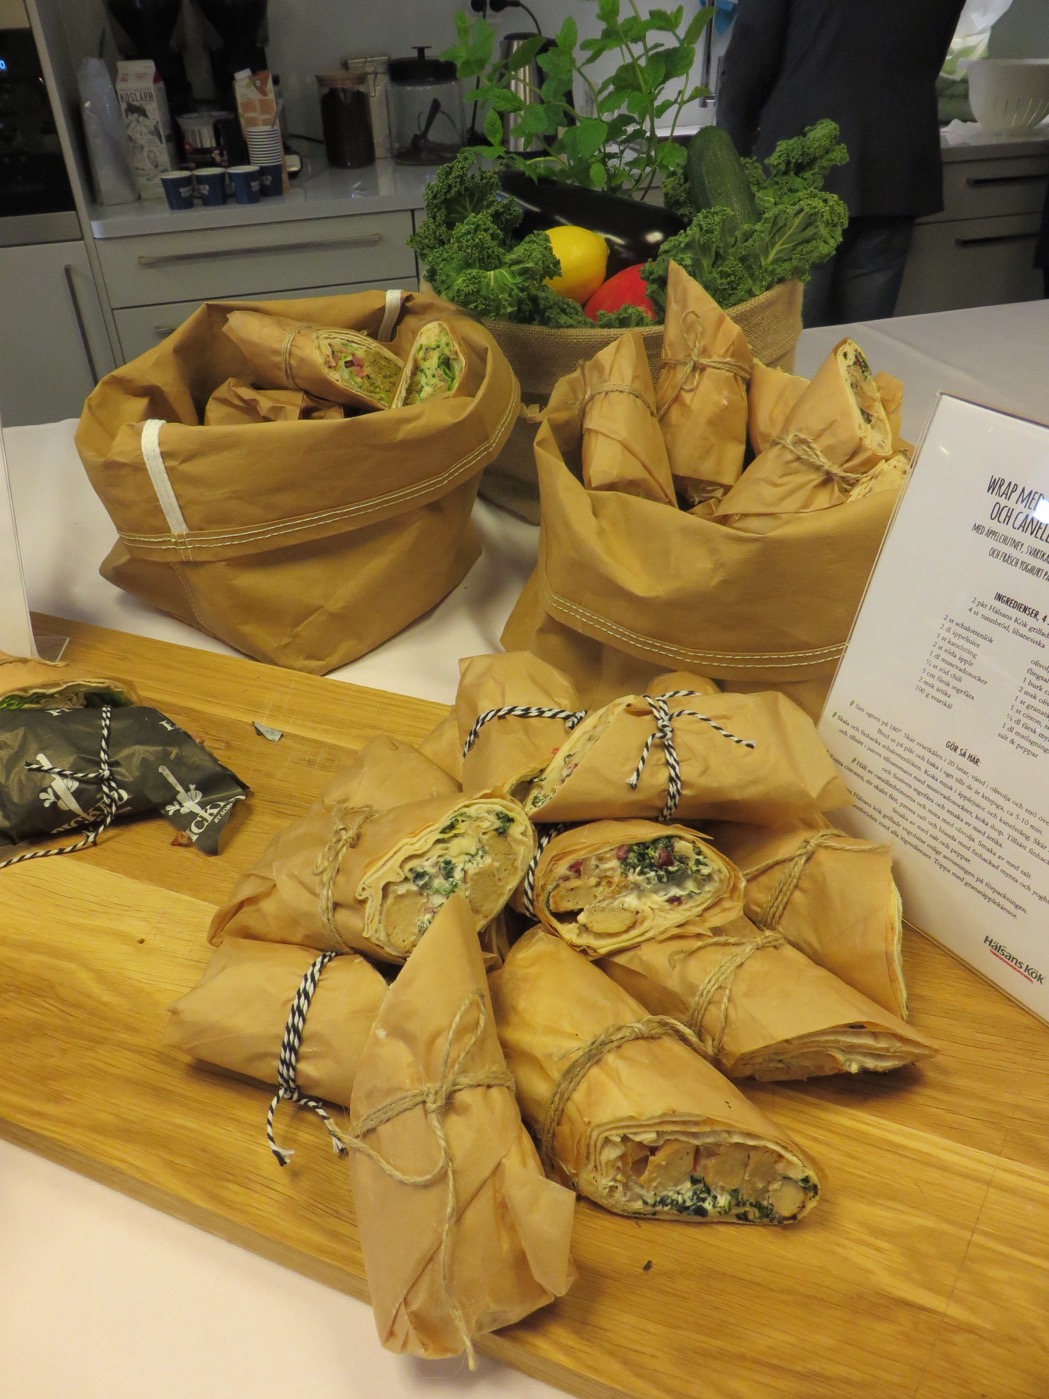 Underbara vegetariska lunchwraps från Hälsans Kök.